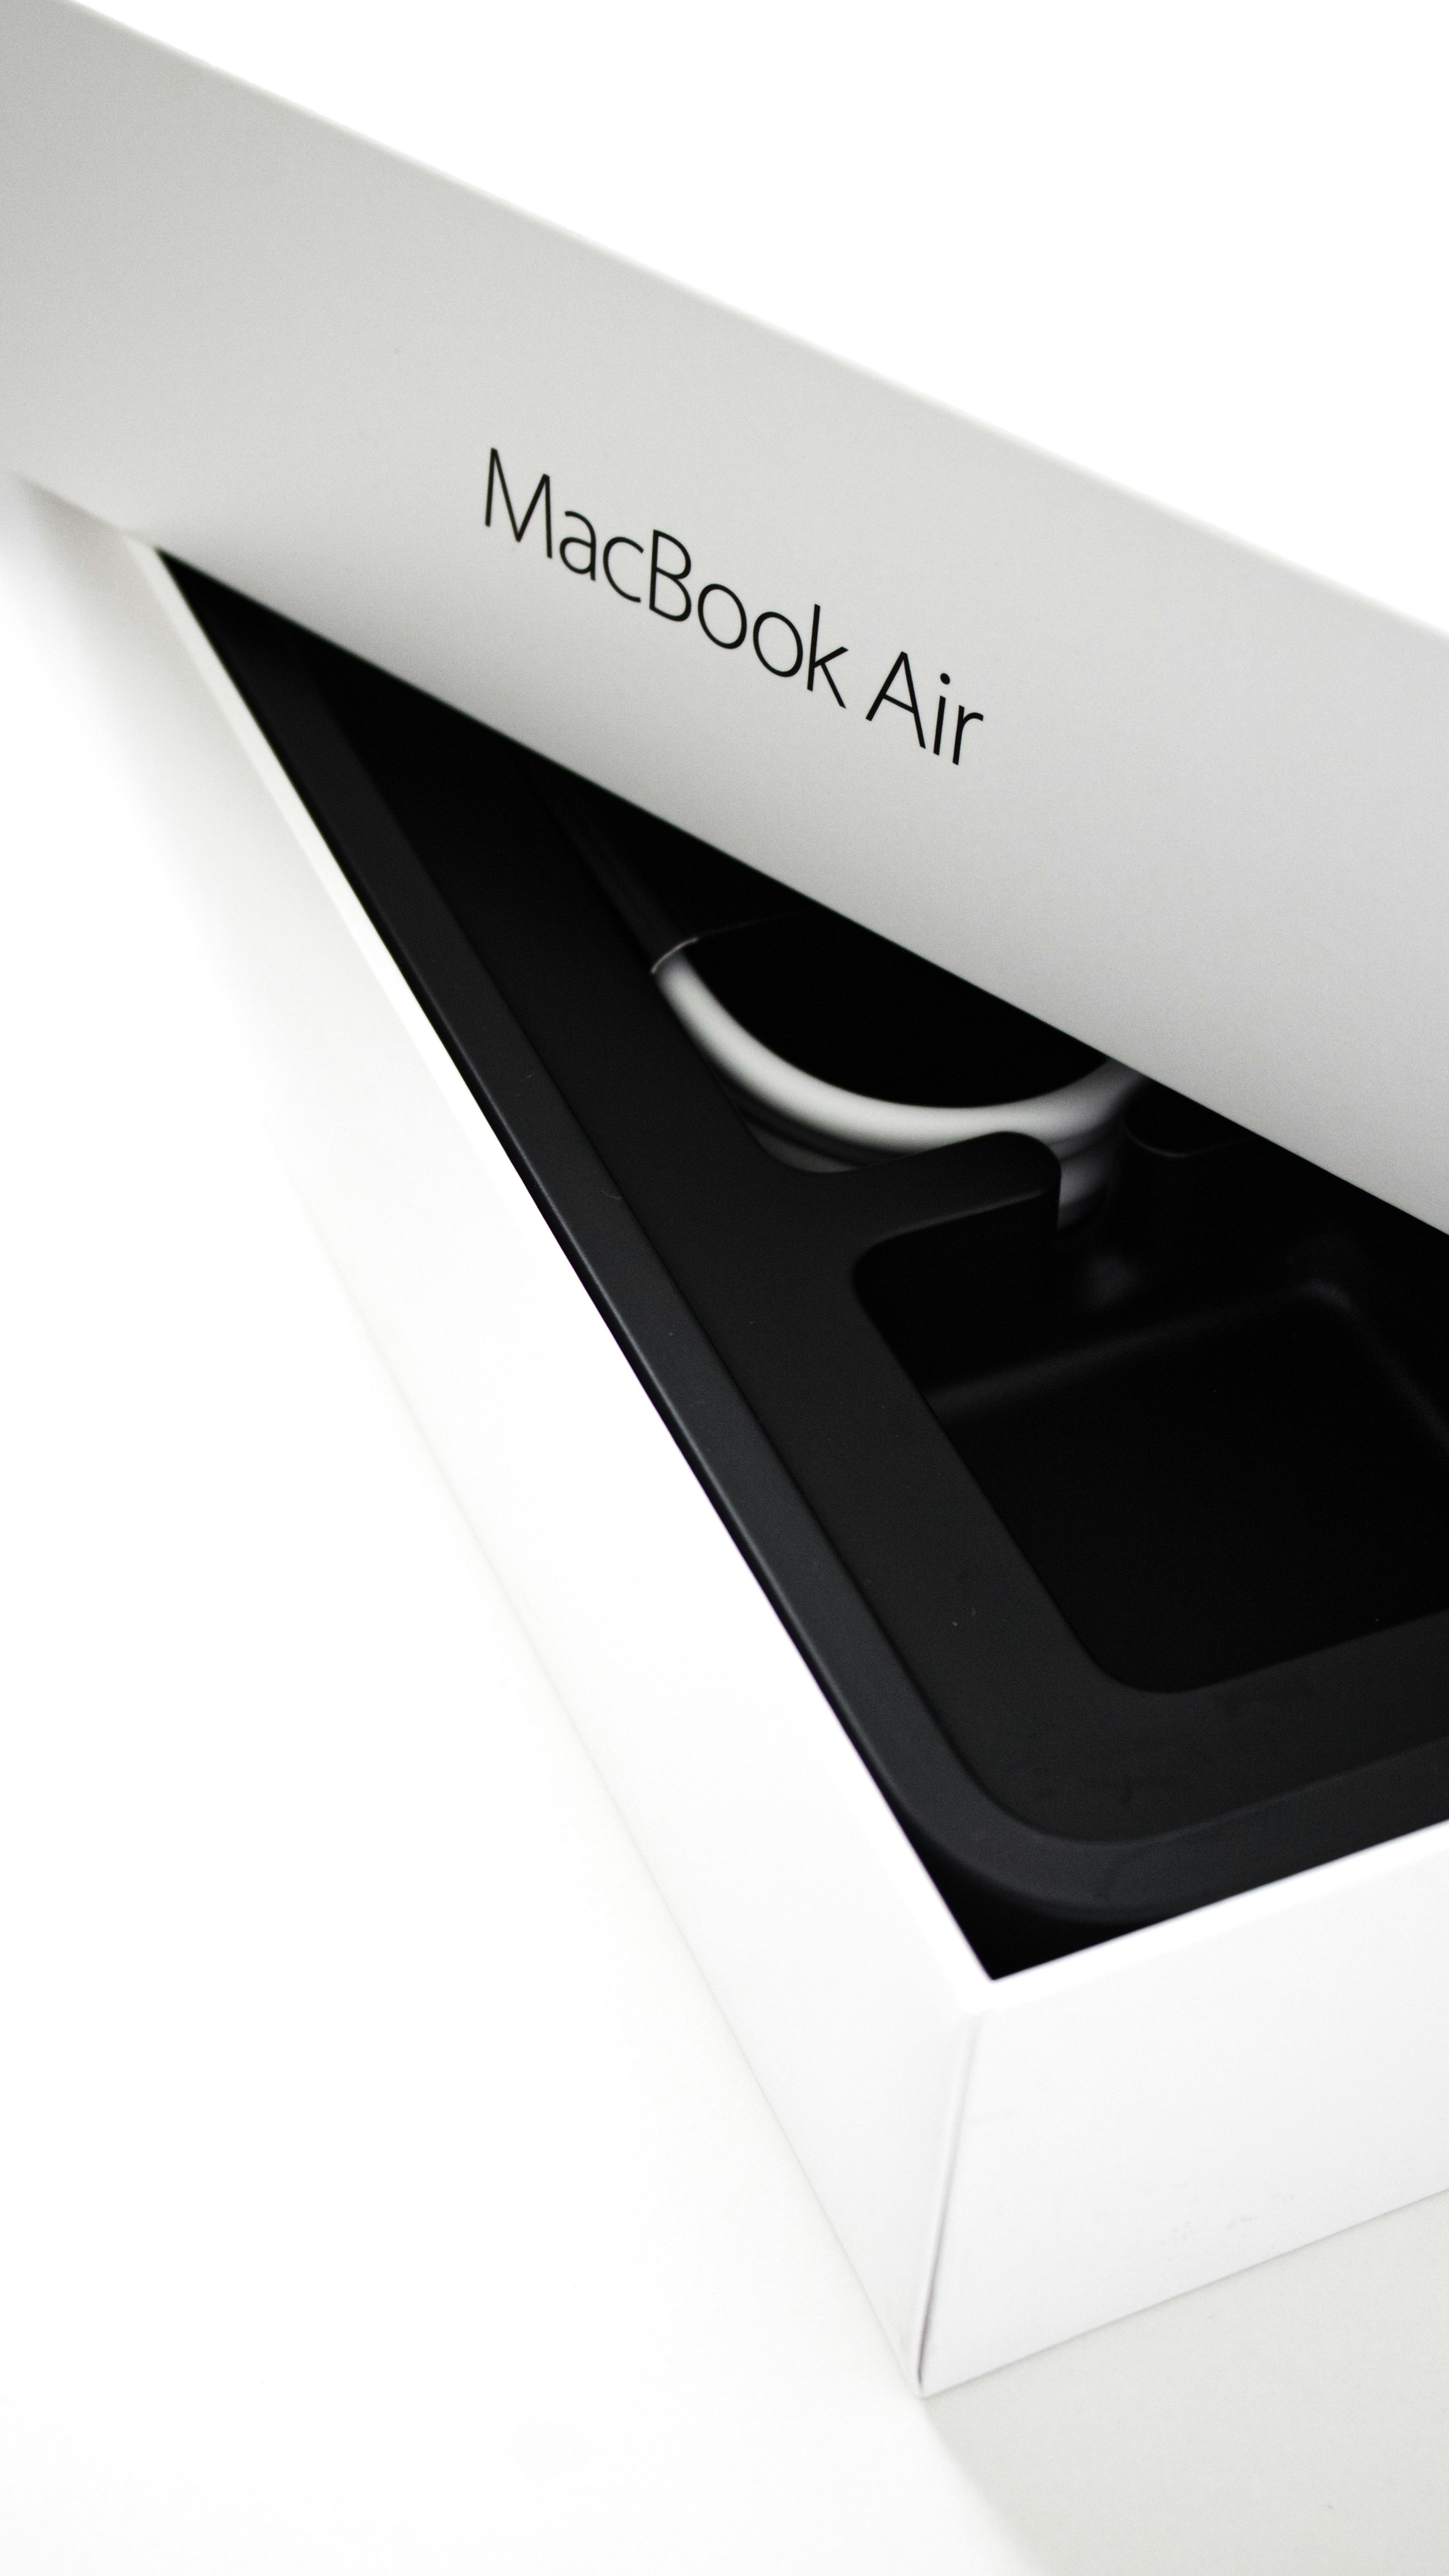 Macbook Air on office desk.